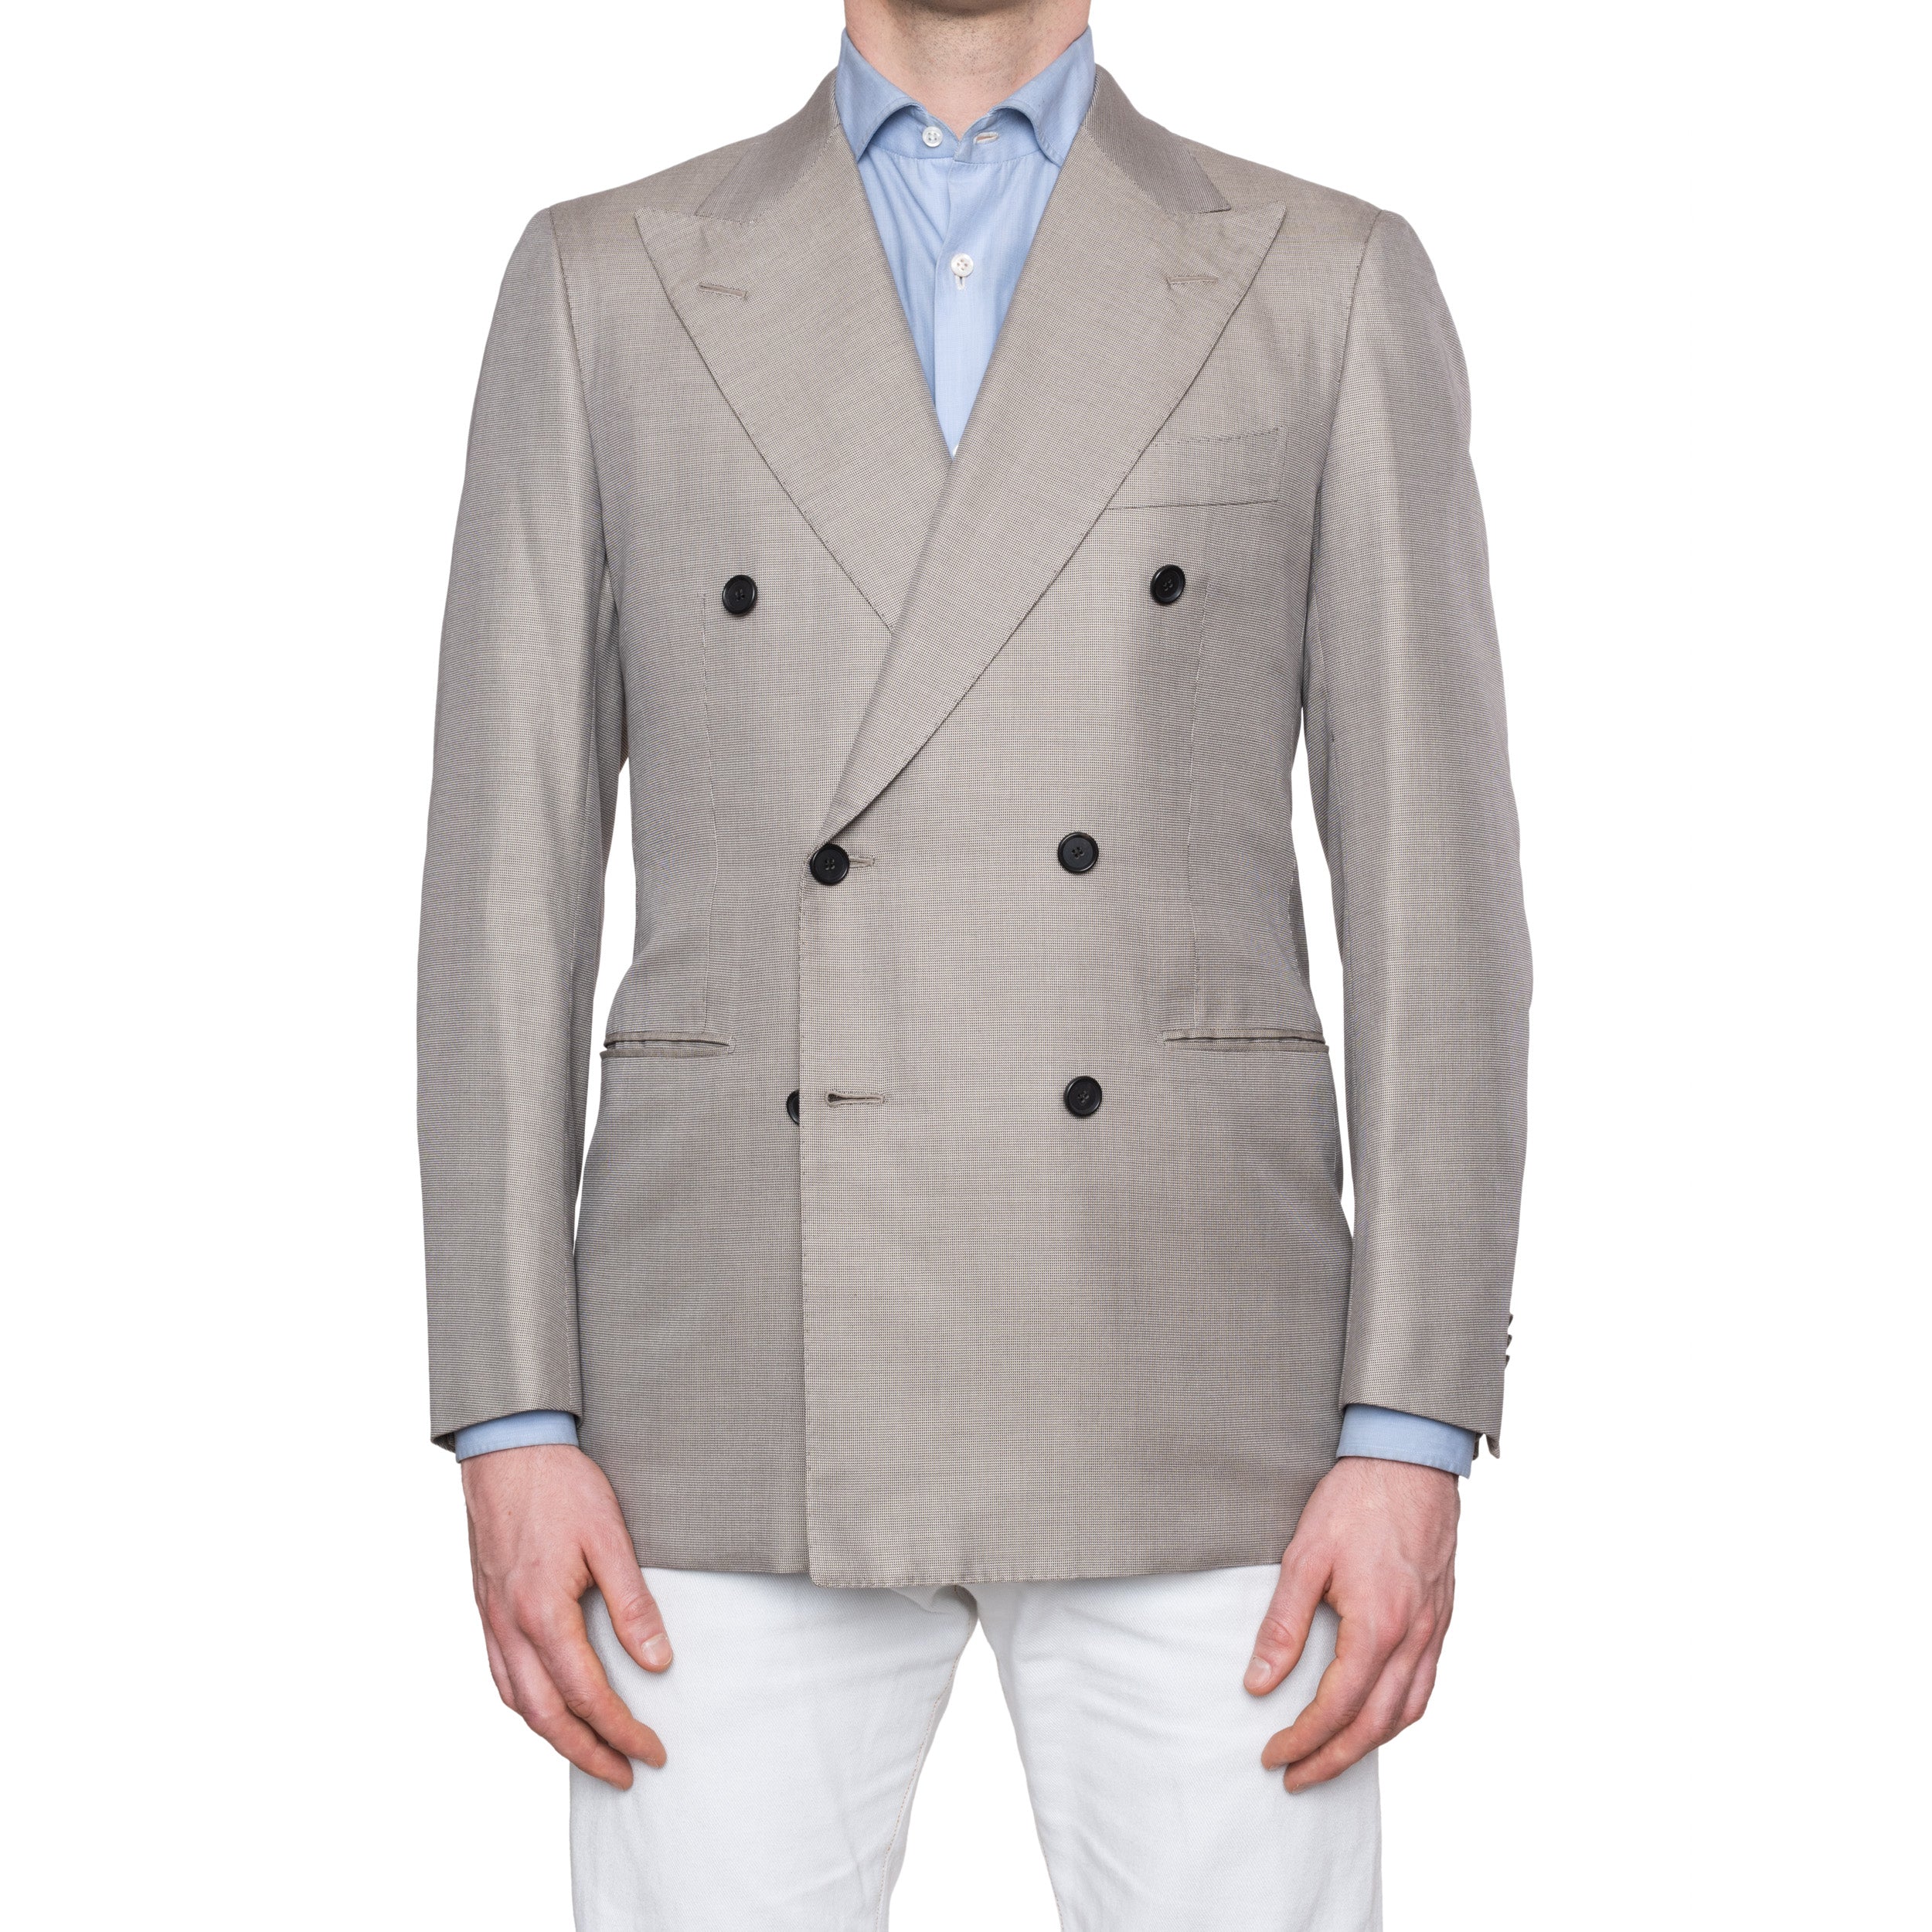 CESARE ATTOLINI Napoli Gray Cotton Silk Double Breasted Blazer Jacket NEW CESARE ATTOLINI